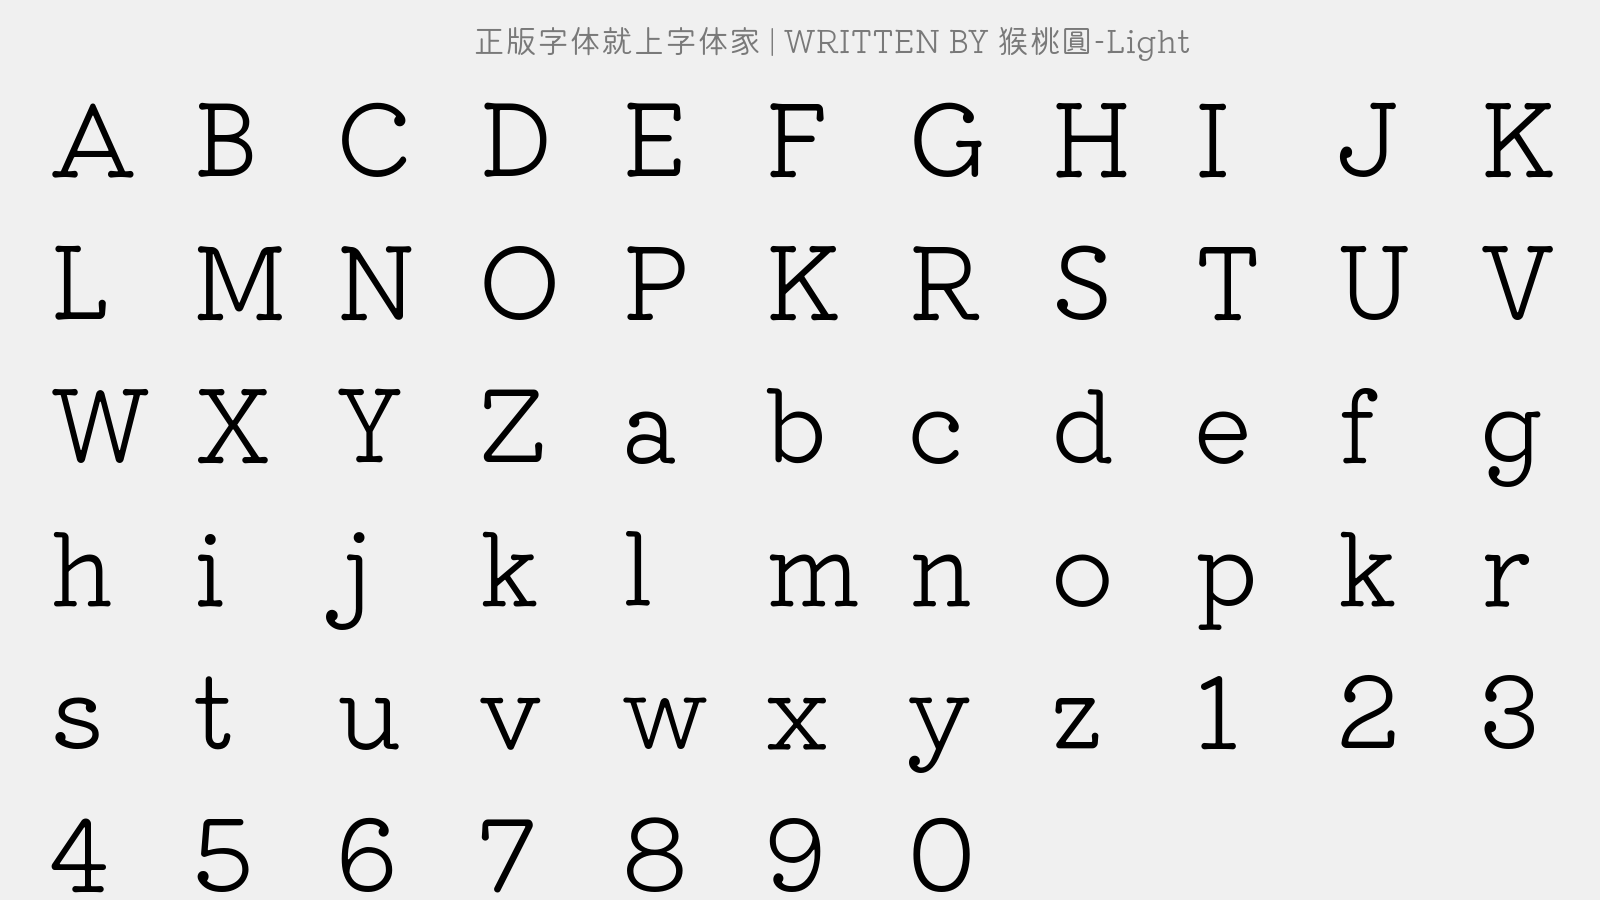 猕猴桃圆-Light - 大写字母/小写字母/数字